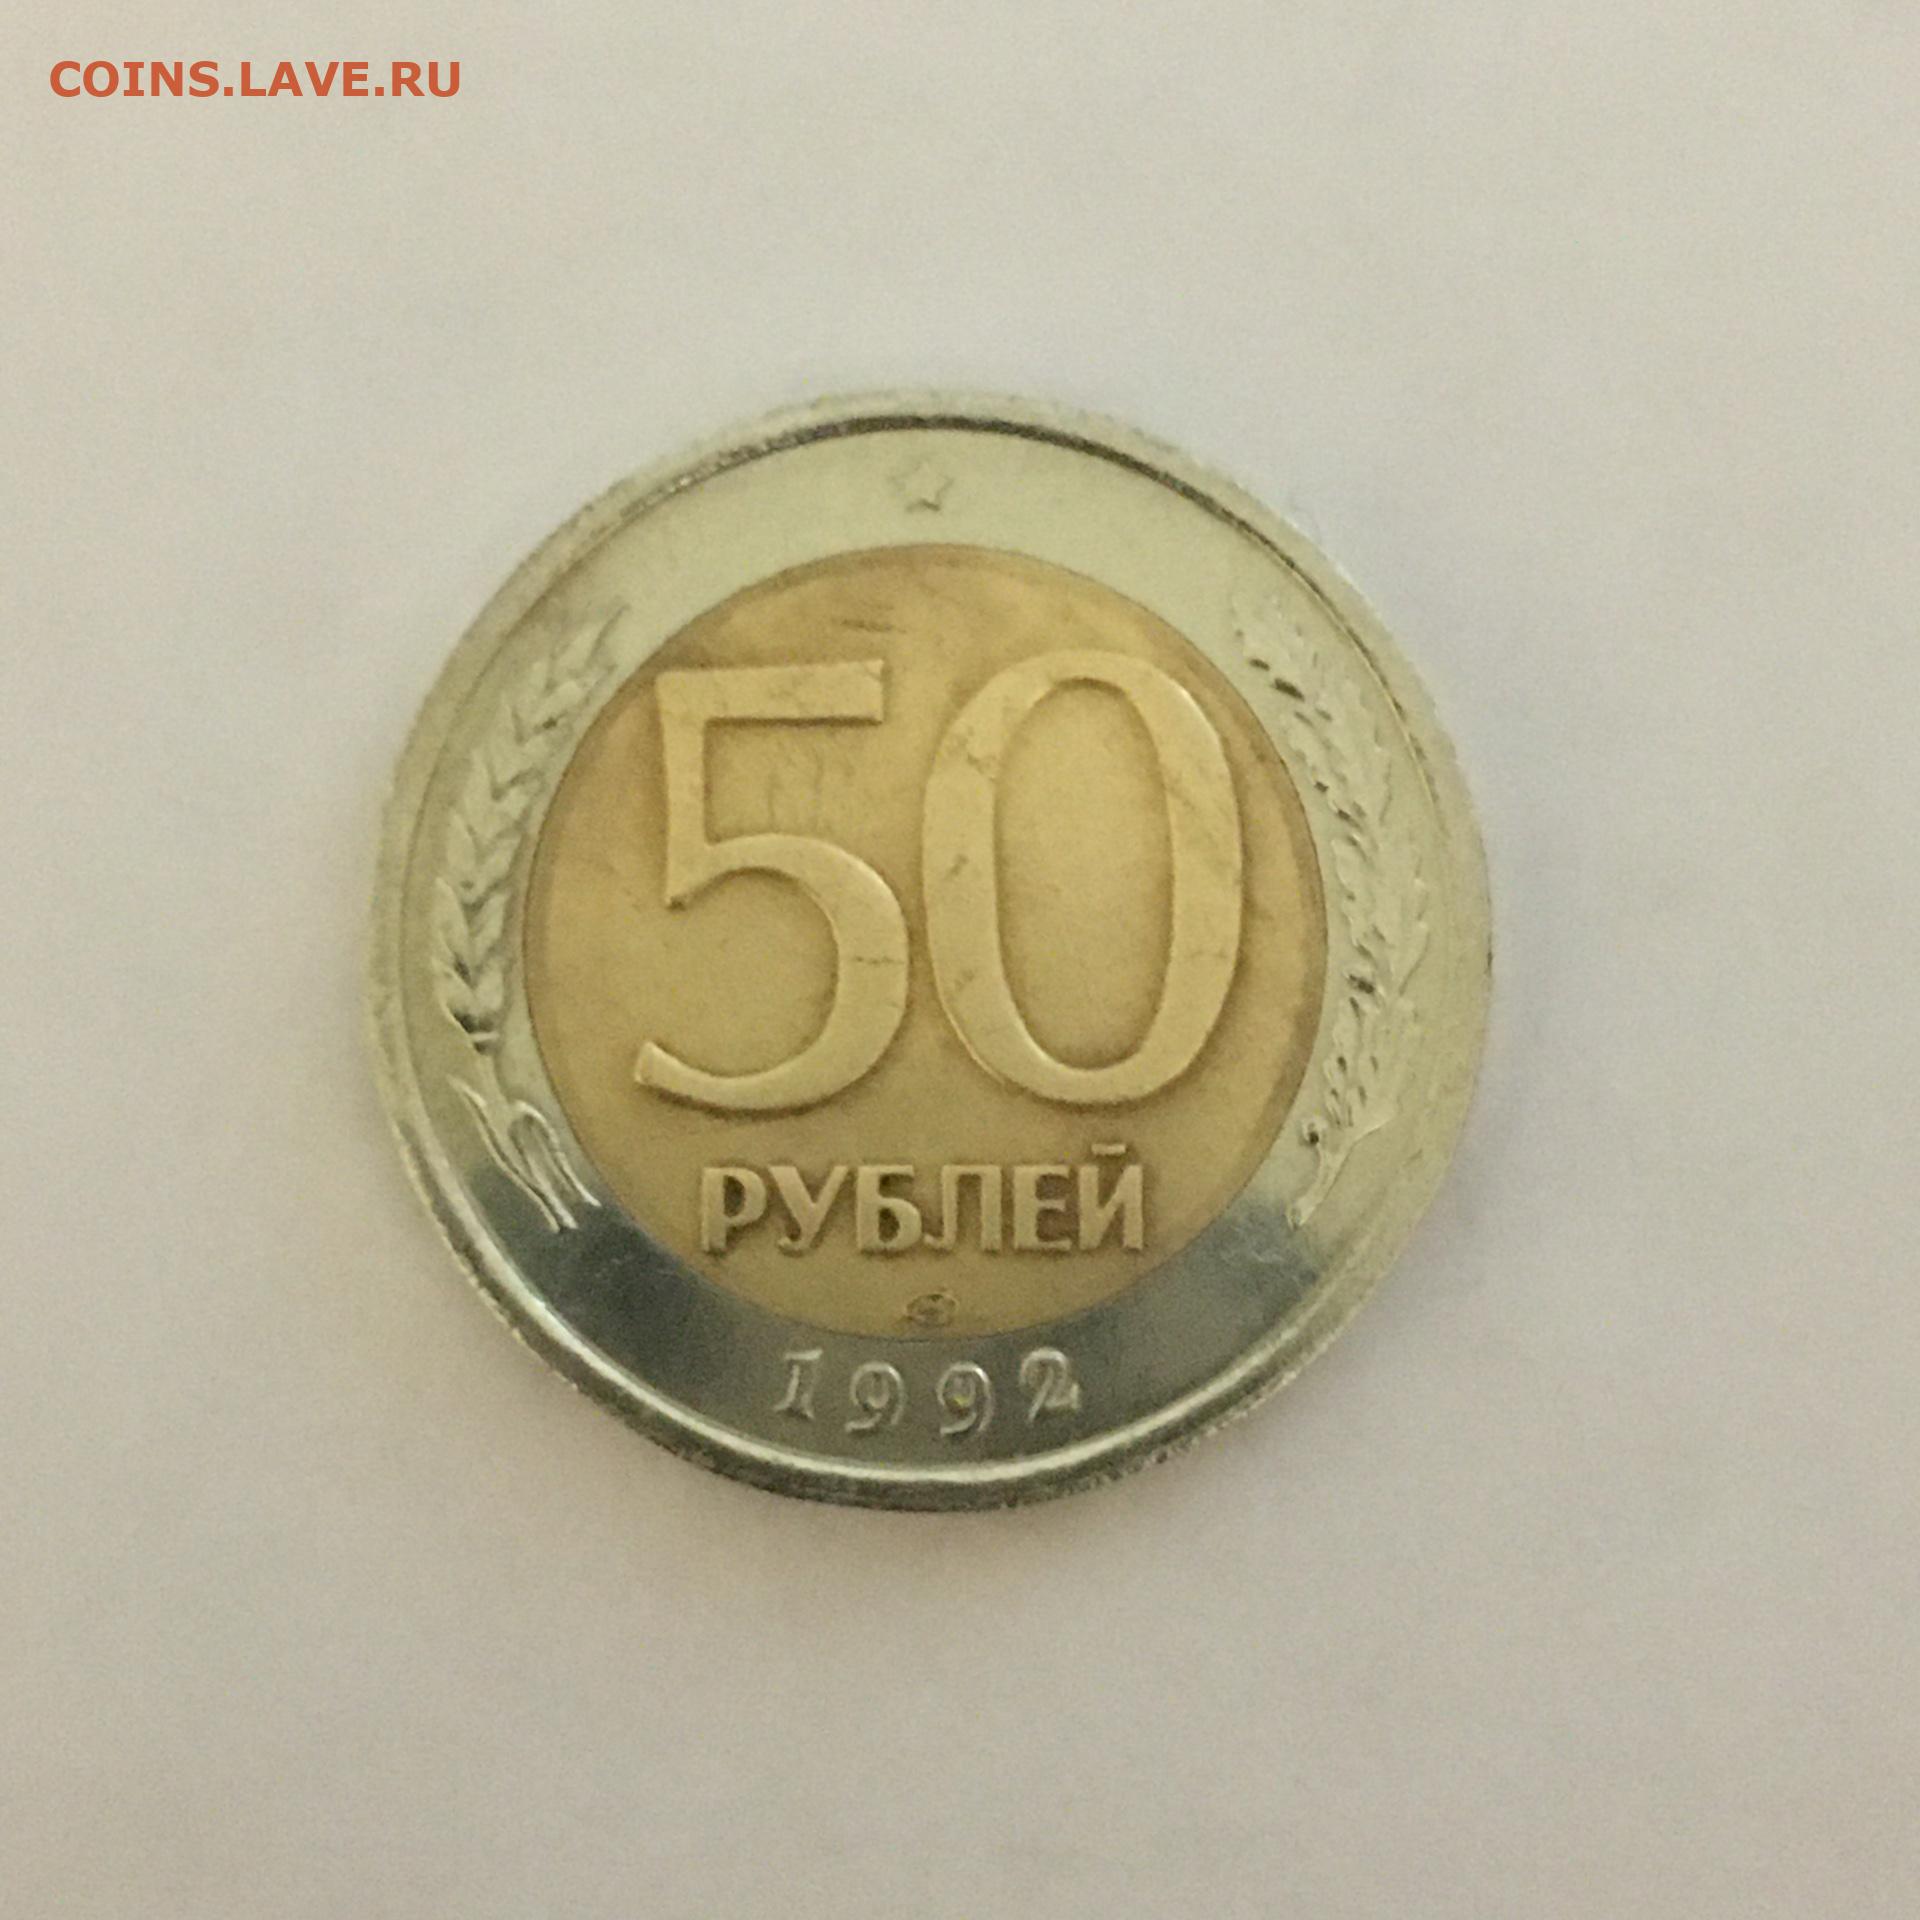 24 50 в рубли. 50 Рублей 1992. 50 Рублей 1992 года перевертыш. 50 Рублей 1992 года. G-VG. Монеты 92-93 года.